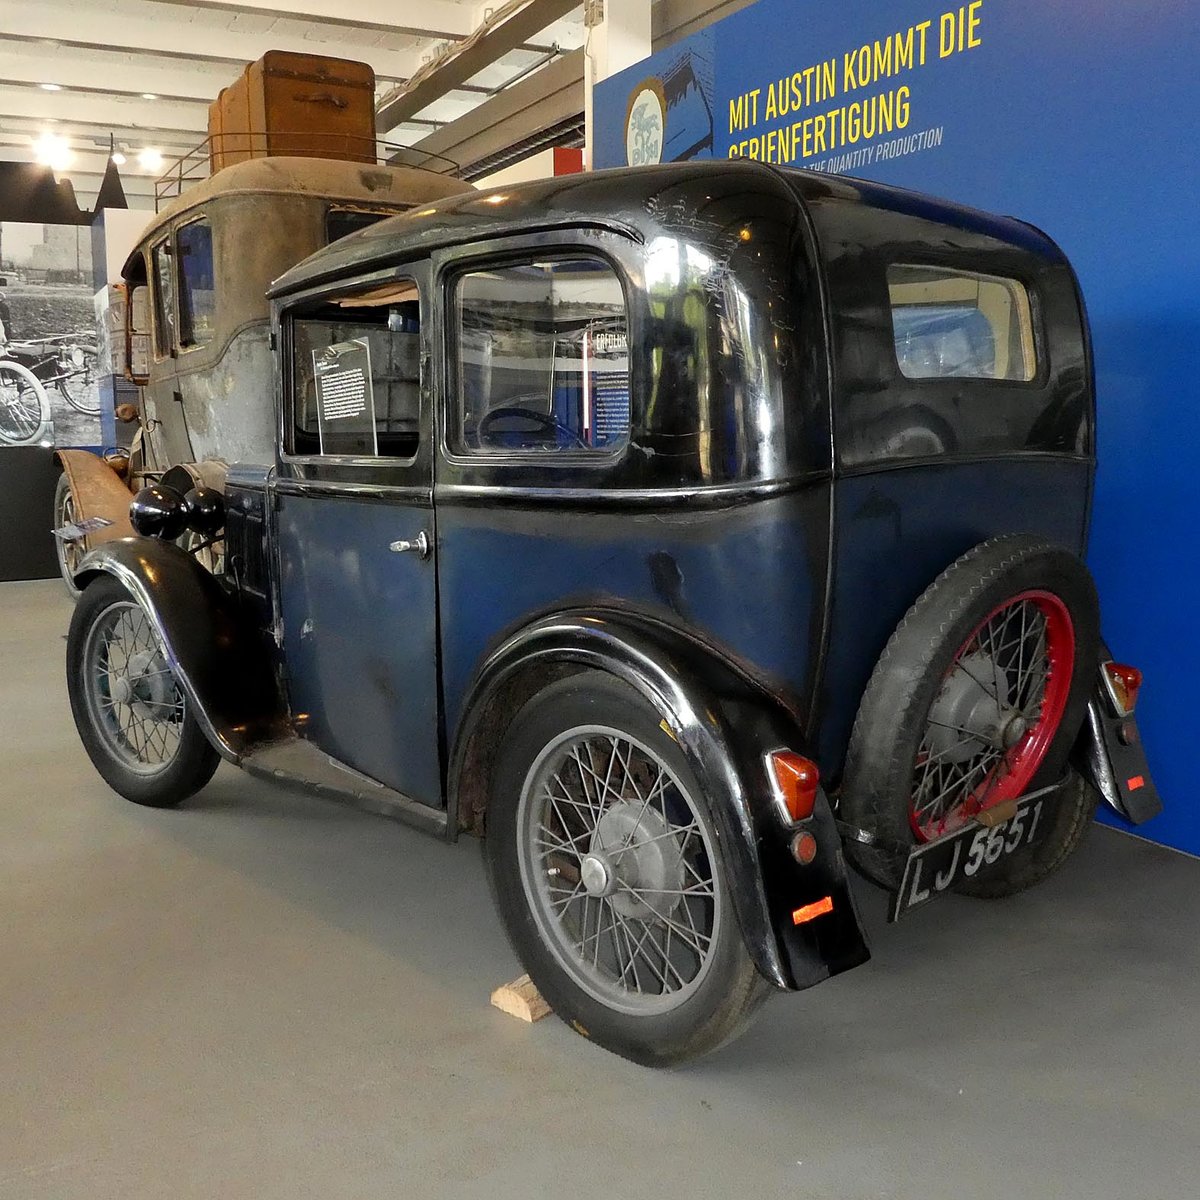 =Austin Seven steht in der AUTOMOBILWELT Eisenach. Zwischen 1922 und 1939 wurden insgesamt ca. 290000 Exemplare dieses Fahrzeugs gebaut. Techn. Daten: Bj. 1932, 748 ccm, 15 PS, 65 km/h